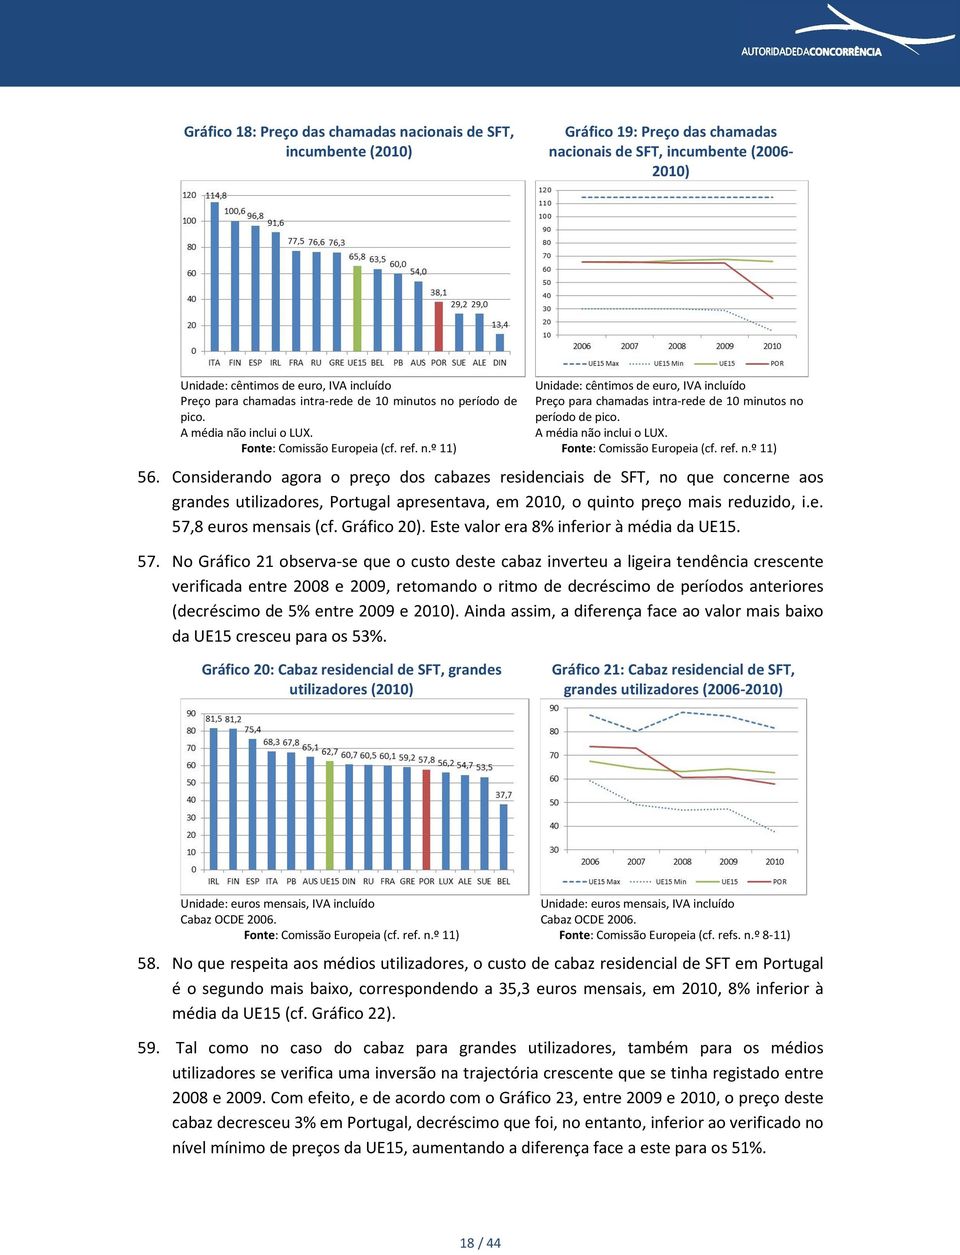 A média não inclui o LUX. Fonte: Comissão Europeia (cf. ref. n.º 11) Considerando agora o preço dos cabazes residenciais de SFT, no que concerne aos grandes utilizadores, Portugal apresentava, em 2010, o quinto preço mais reduzido, i.